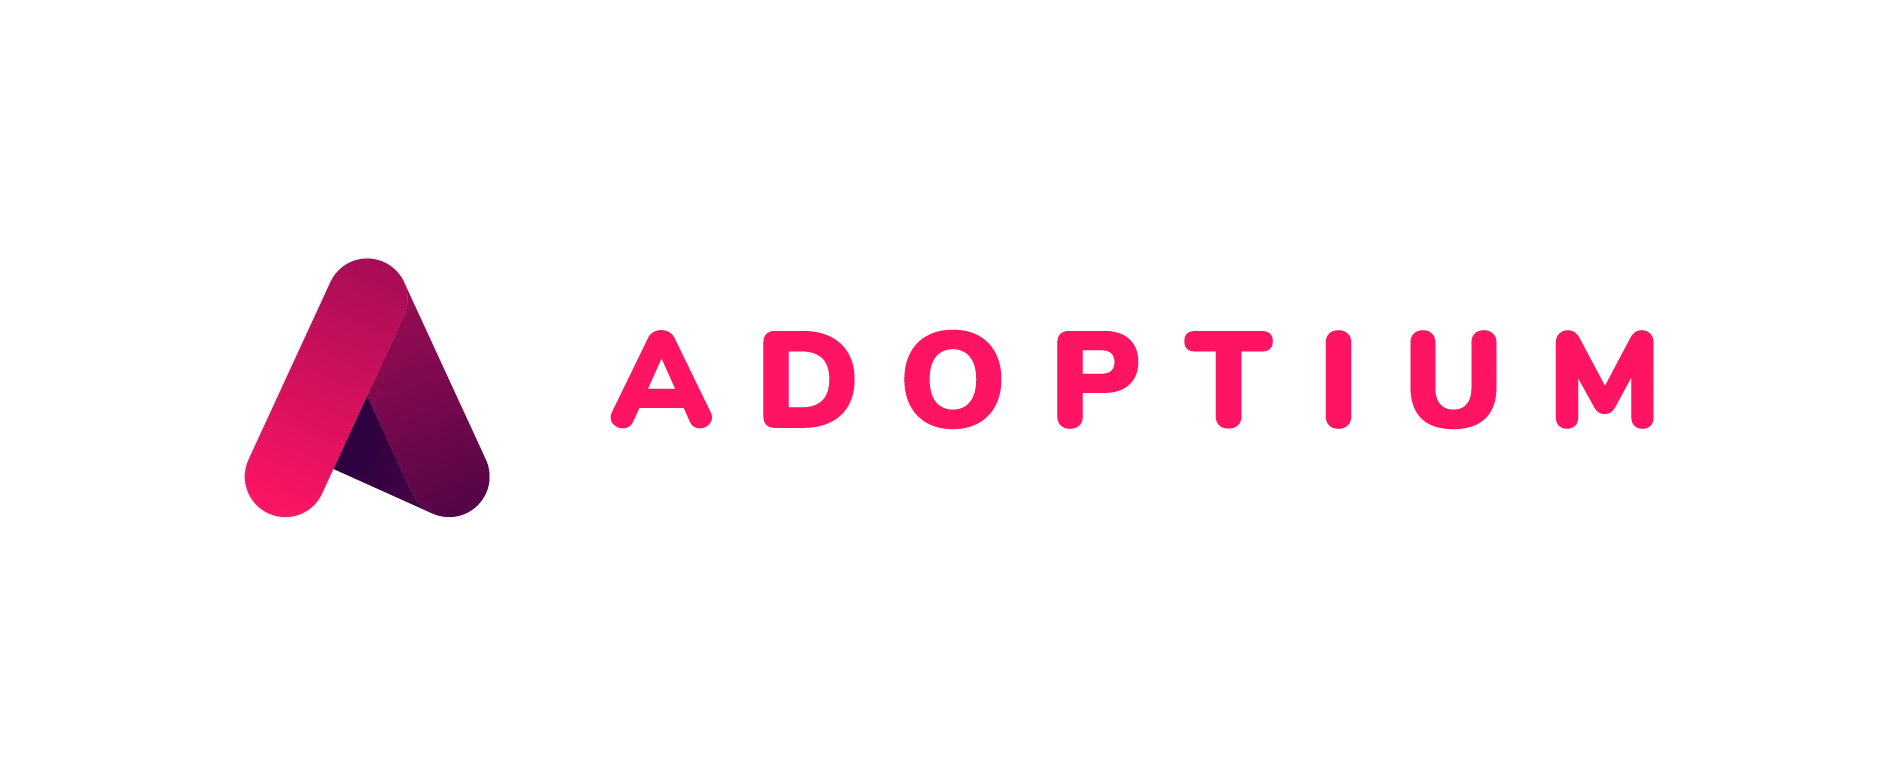 Adoptium project logo